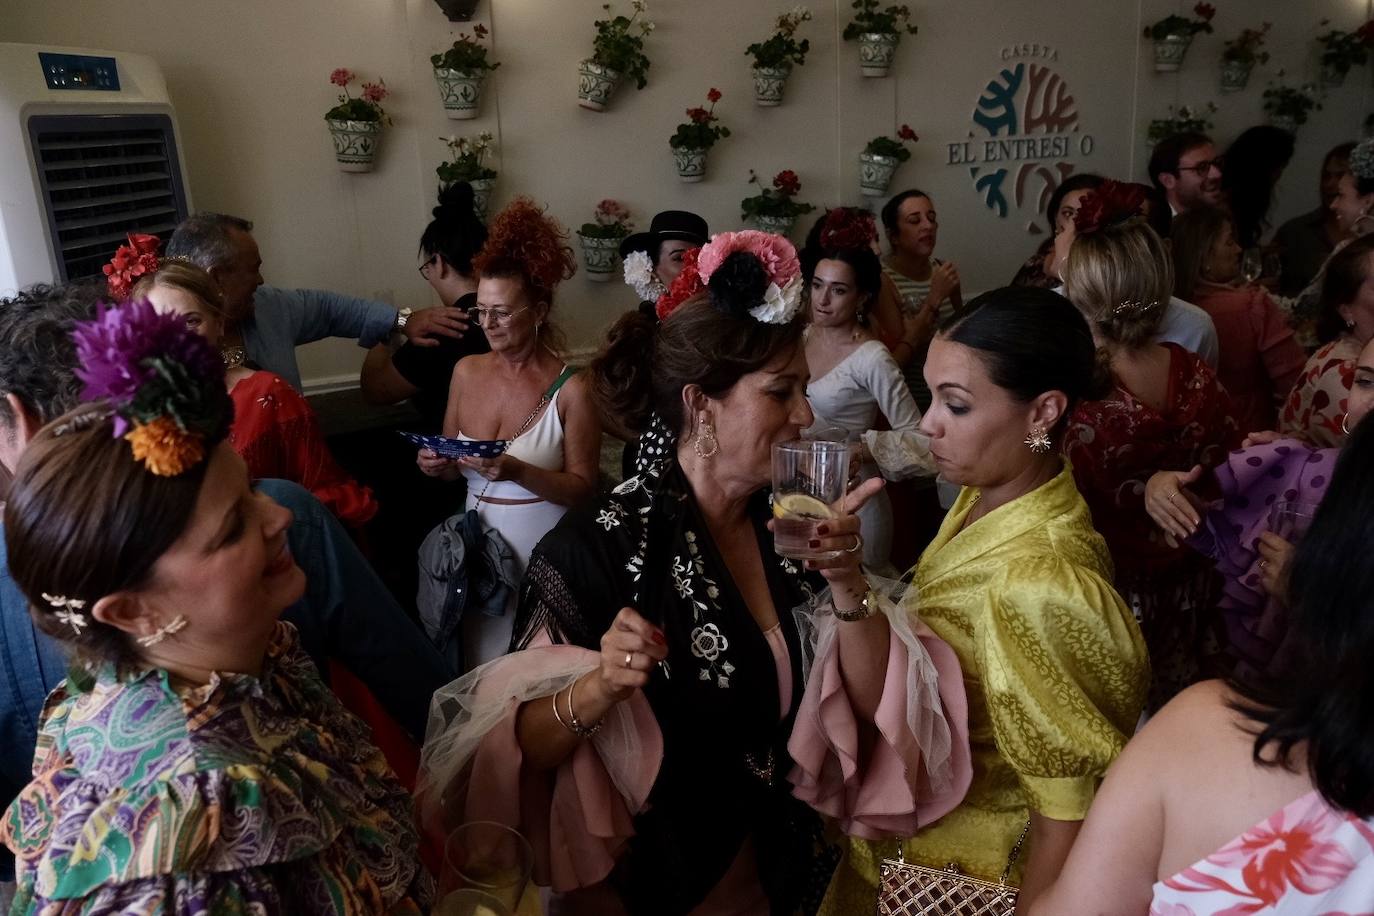 Fotos: Día de la Mujer en la Feria de Chiclana